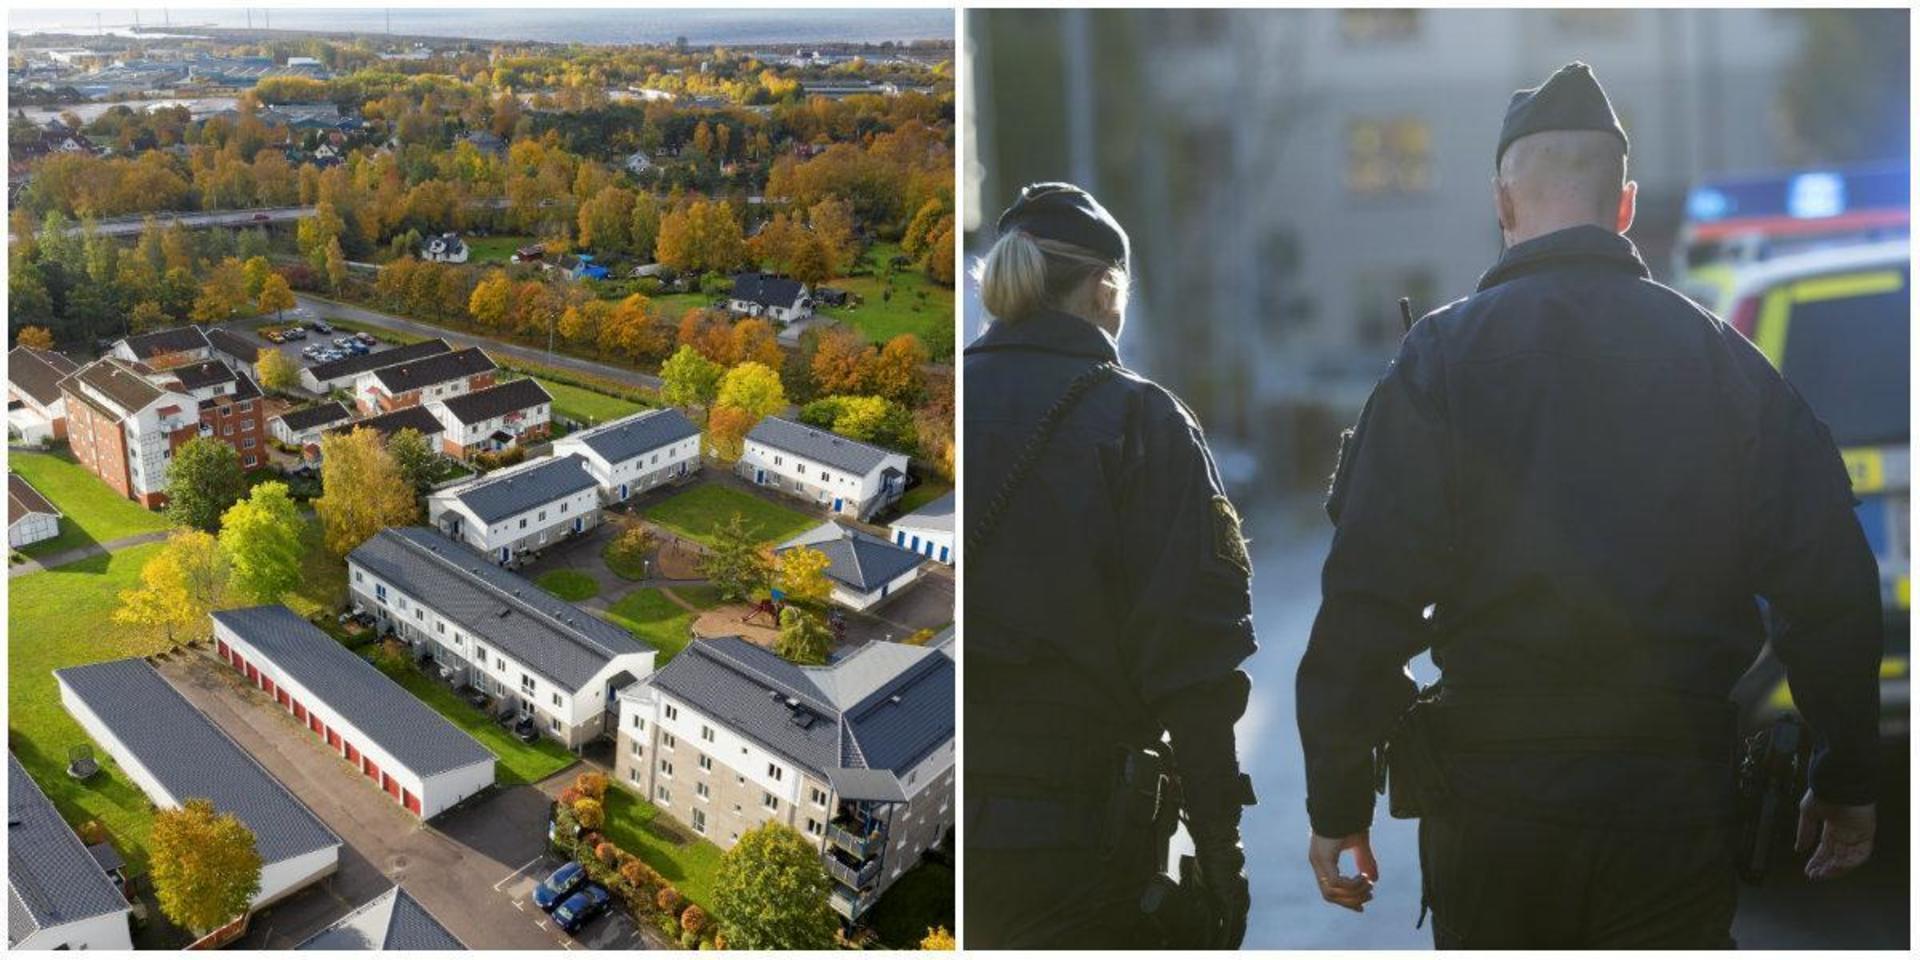 En familj boendes på Falkagård har utsatts för hot, misshandel och övergrepp i rättssak. Två män sitter nu häktade.